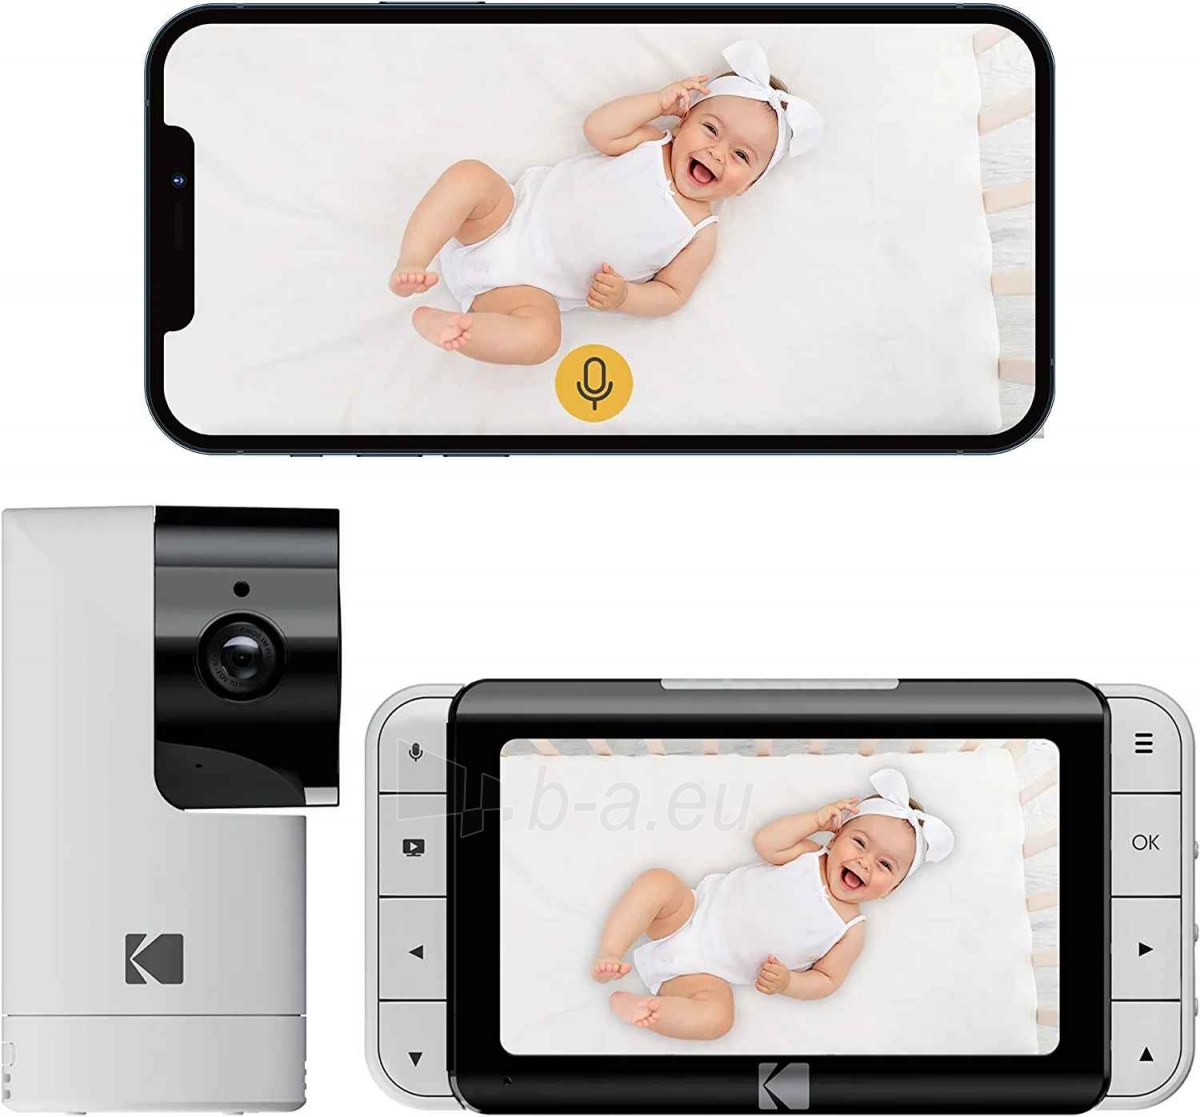 Mobilioji auklė Kodak Cherish C525P Smart Baby Monitor paveikslėlis 3 iš 9